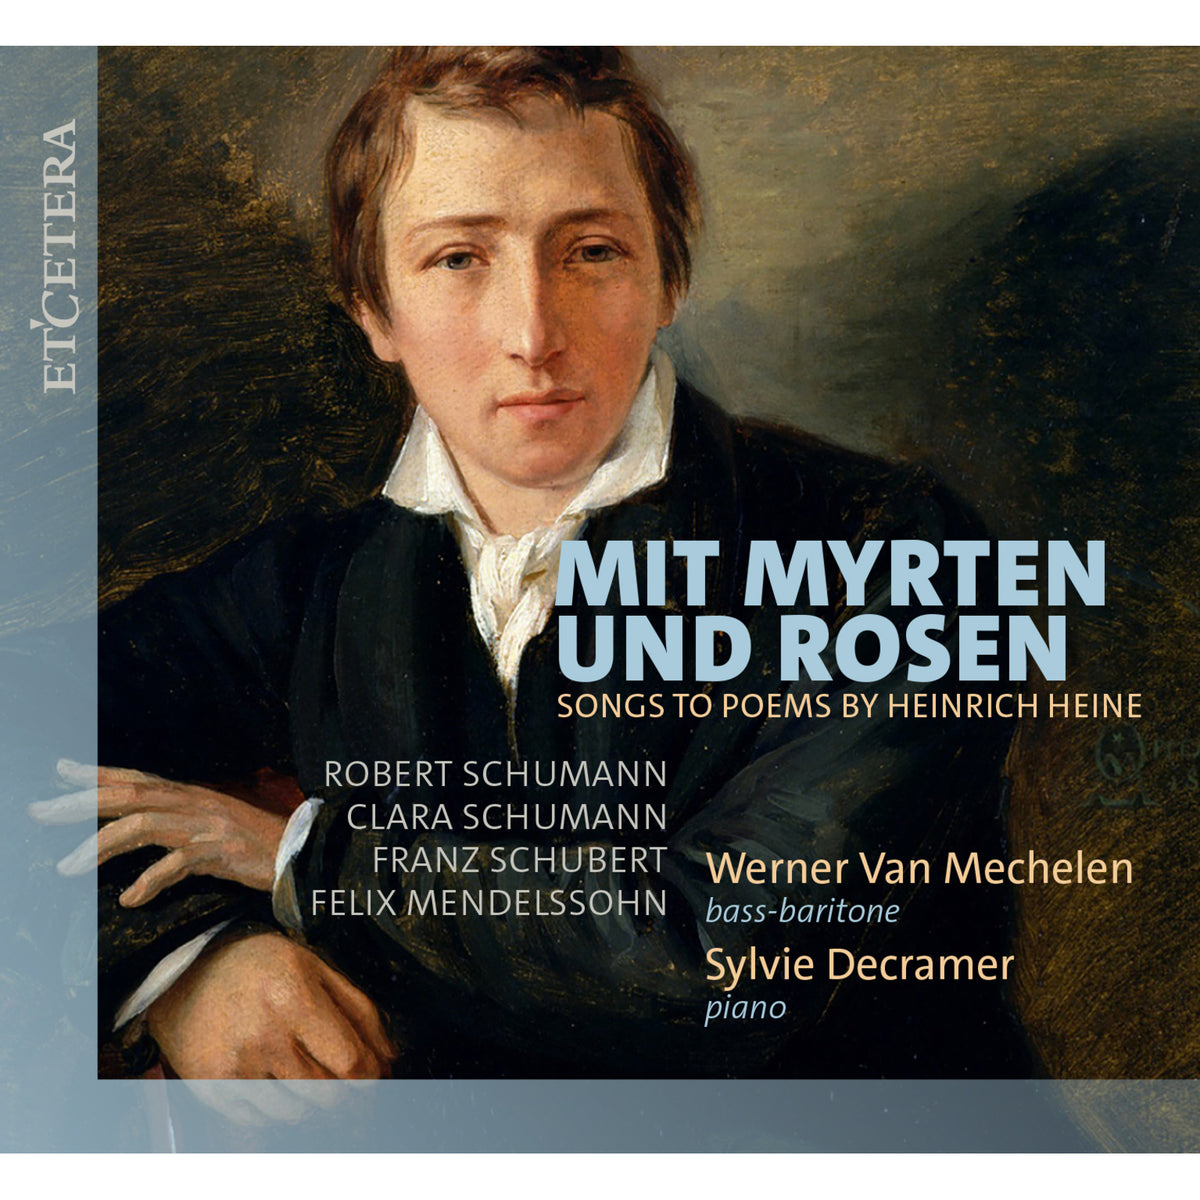 Werner Van Mechelen (bass-baritone), Sylvie Decramer (piano) - Mit Myrten und Rosen - Songs to Poems by Heinrich Heine - KTC1818